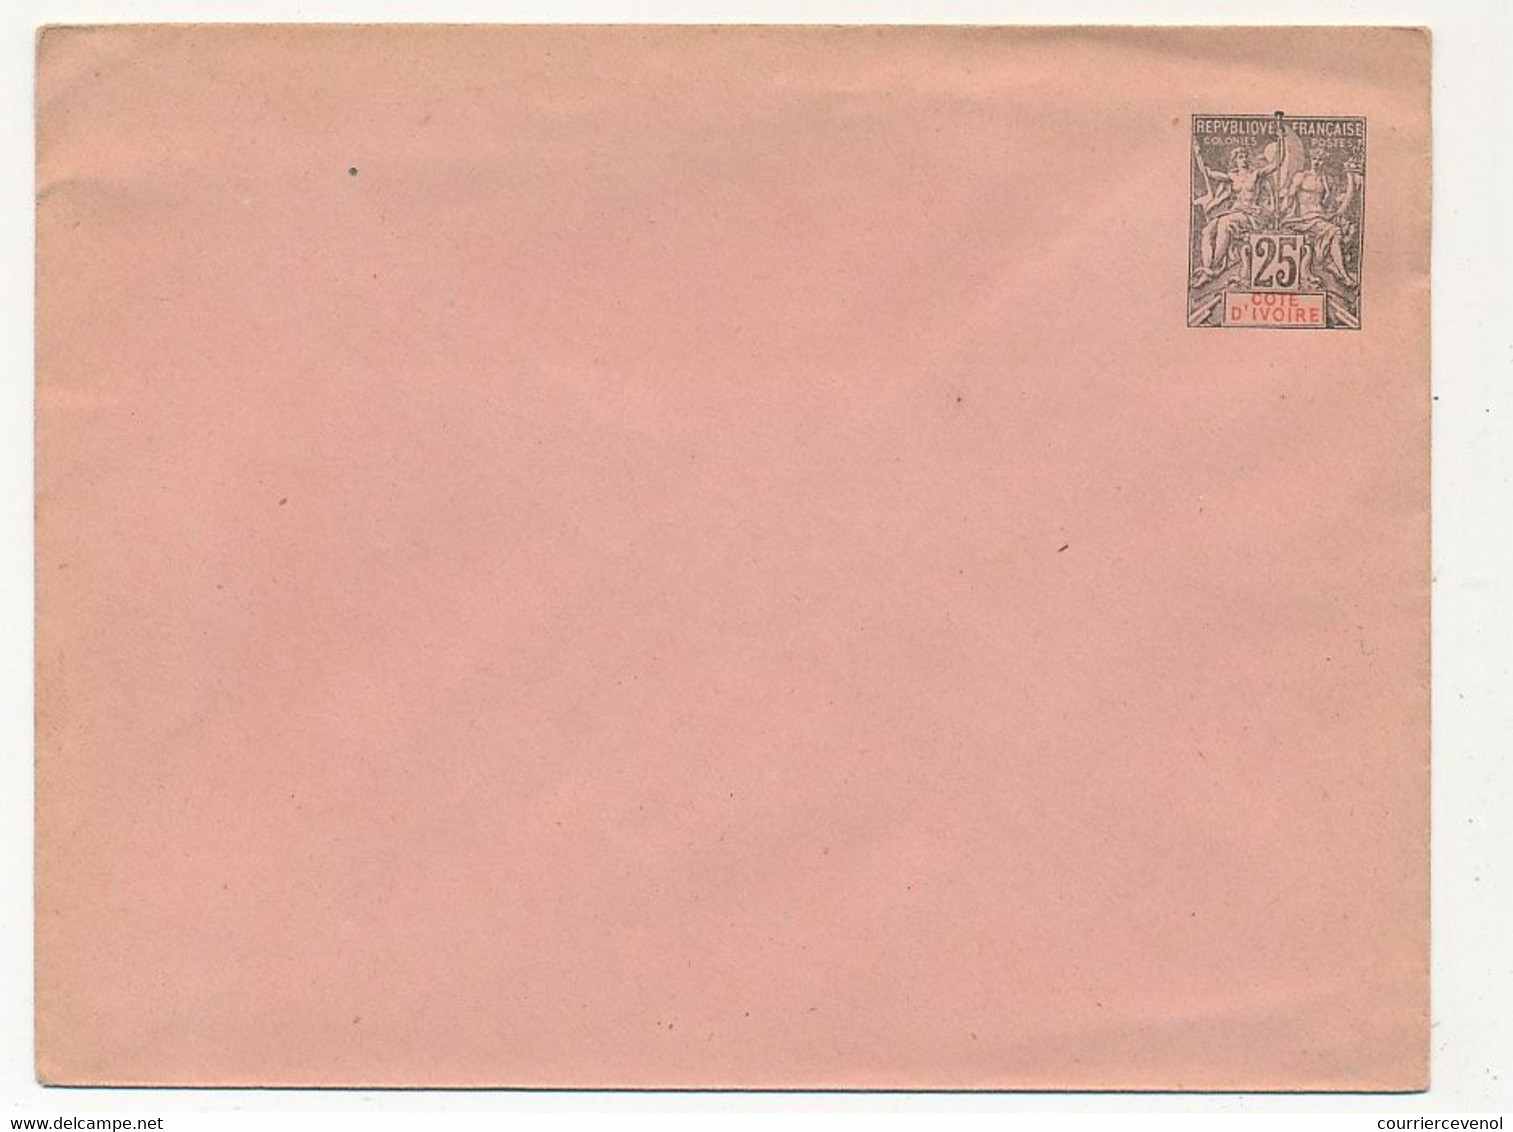 COTE D'IVOIRE - Entier Postal (enveloppe) 25c Groupe - Ref EN 7 - 147 X 112 Mm - Neufs